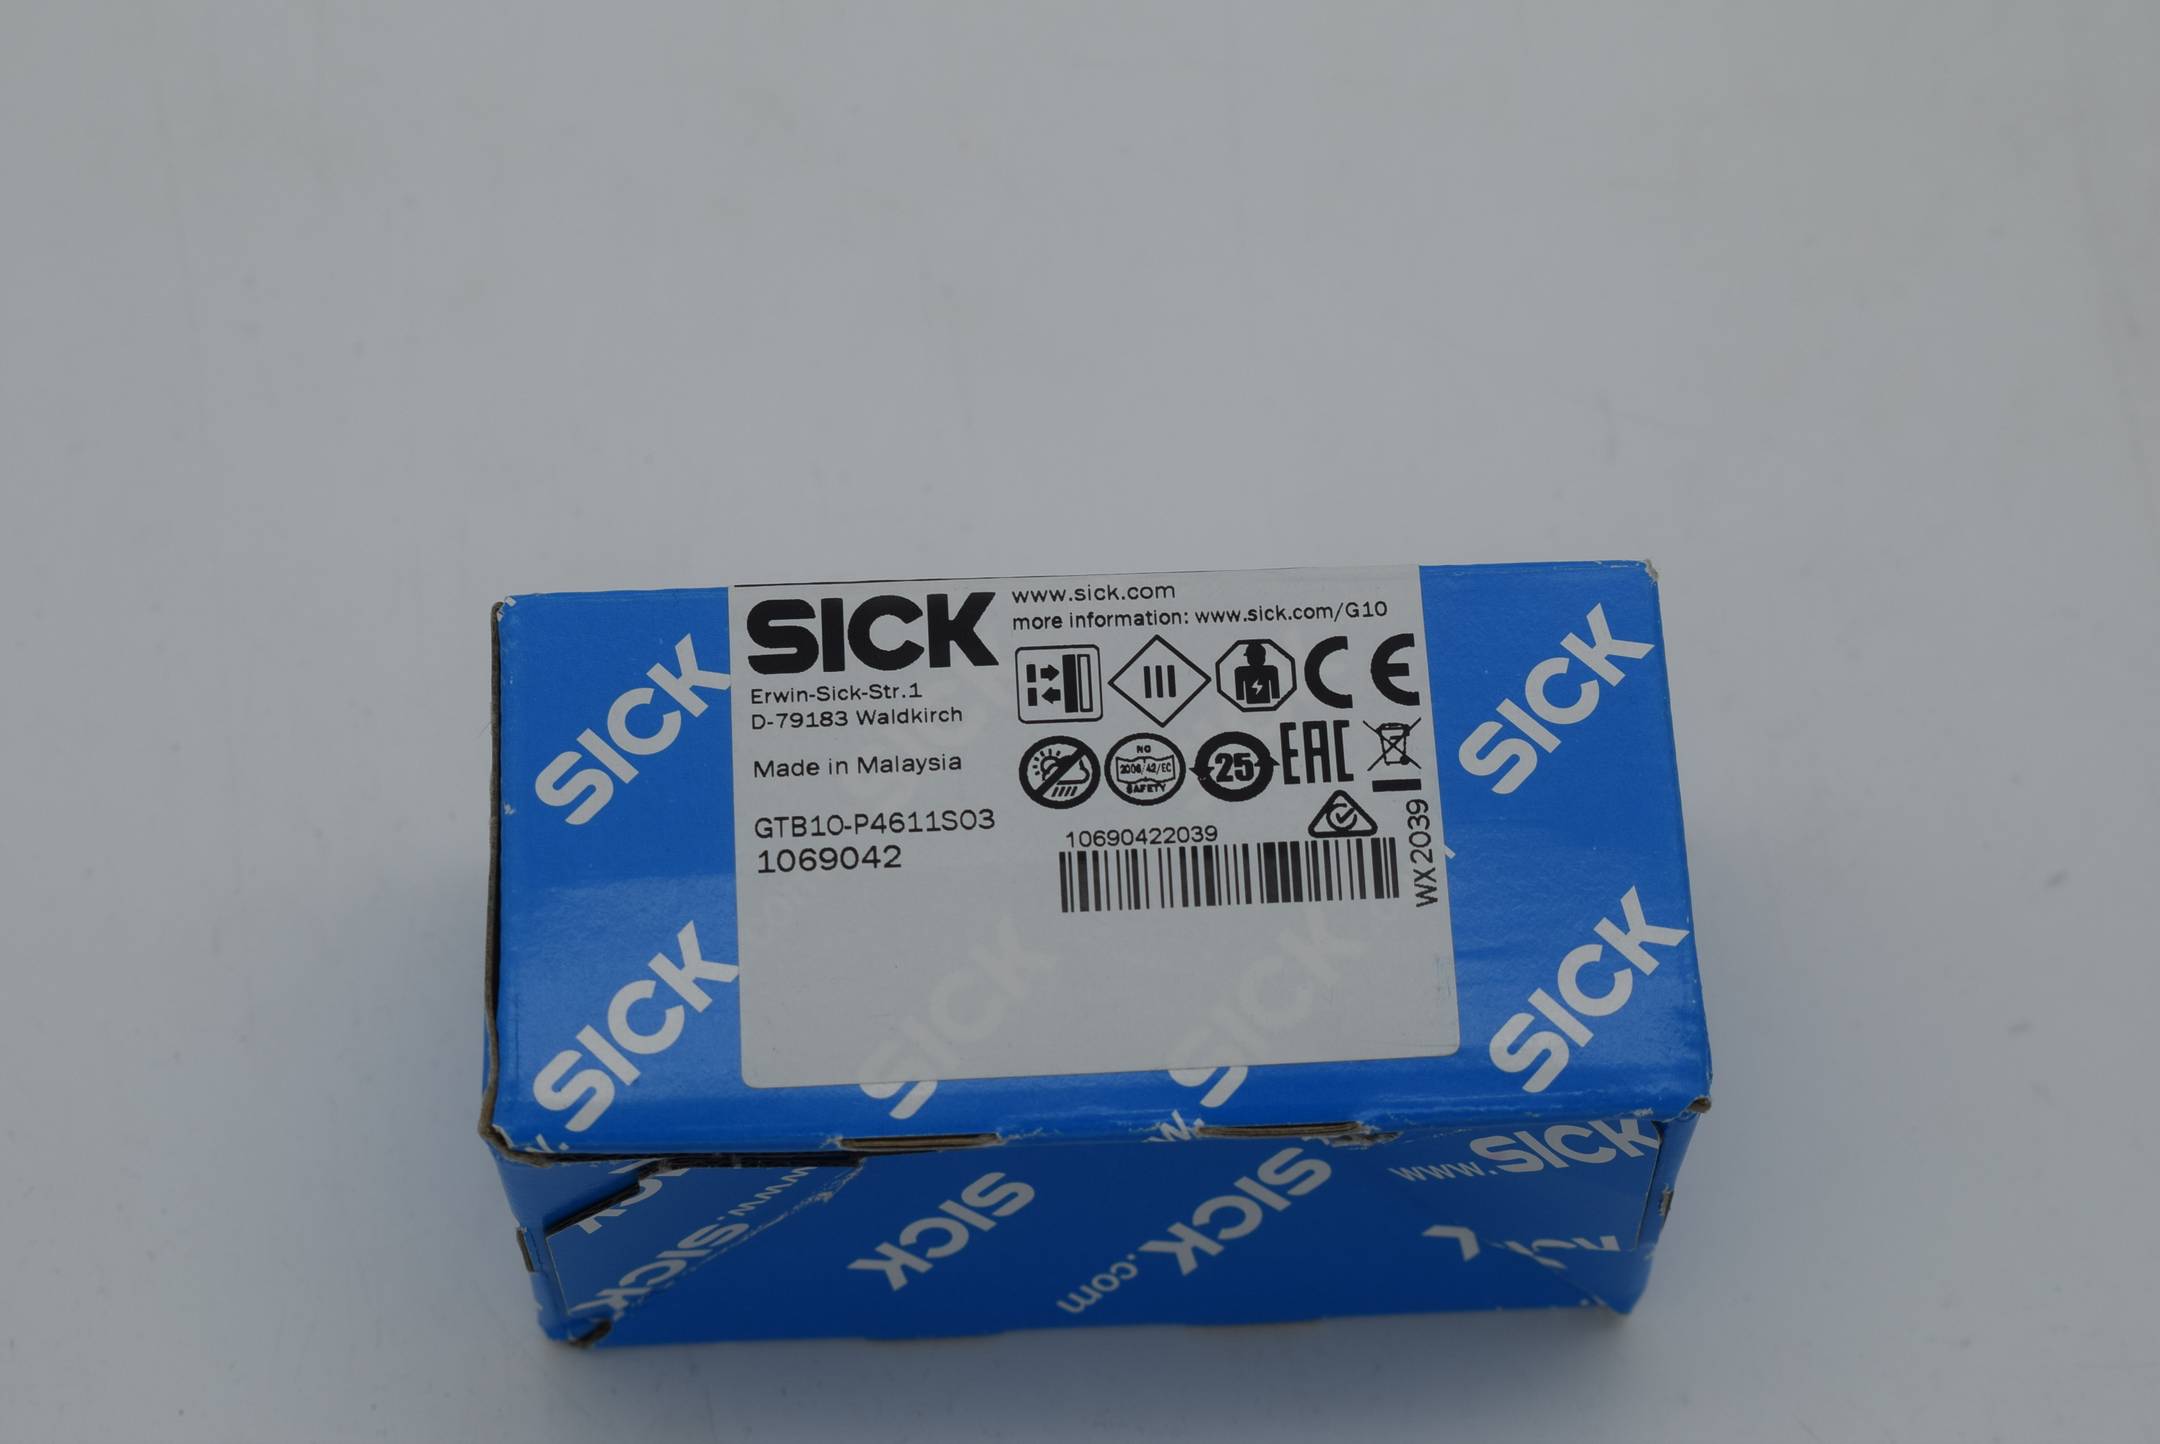 Sick GTB10-P4611S03 1069042